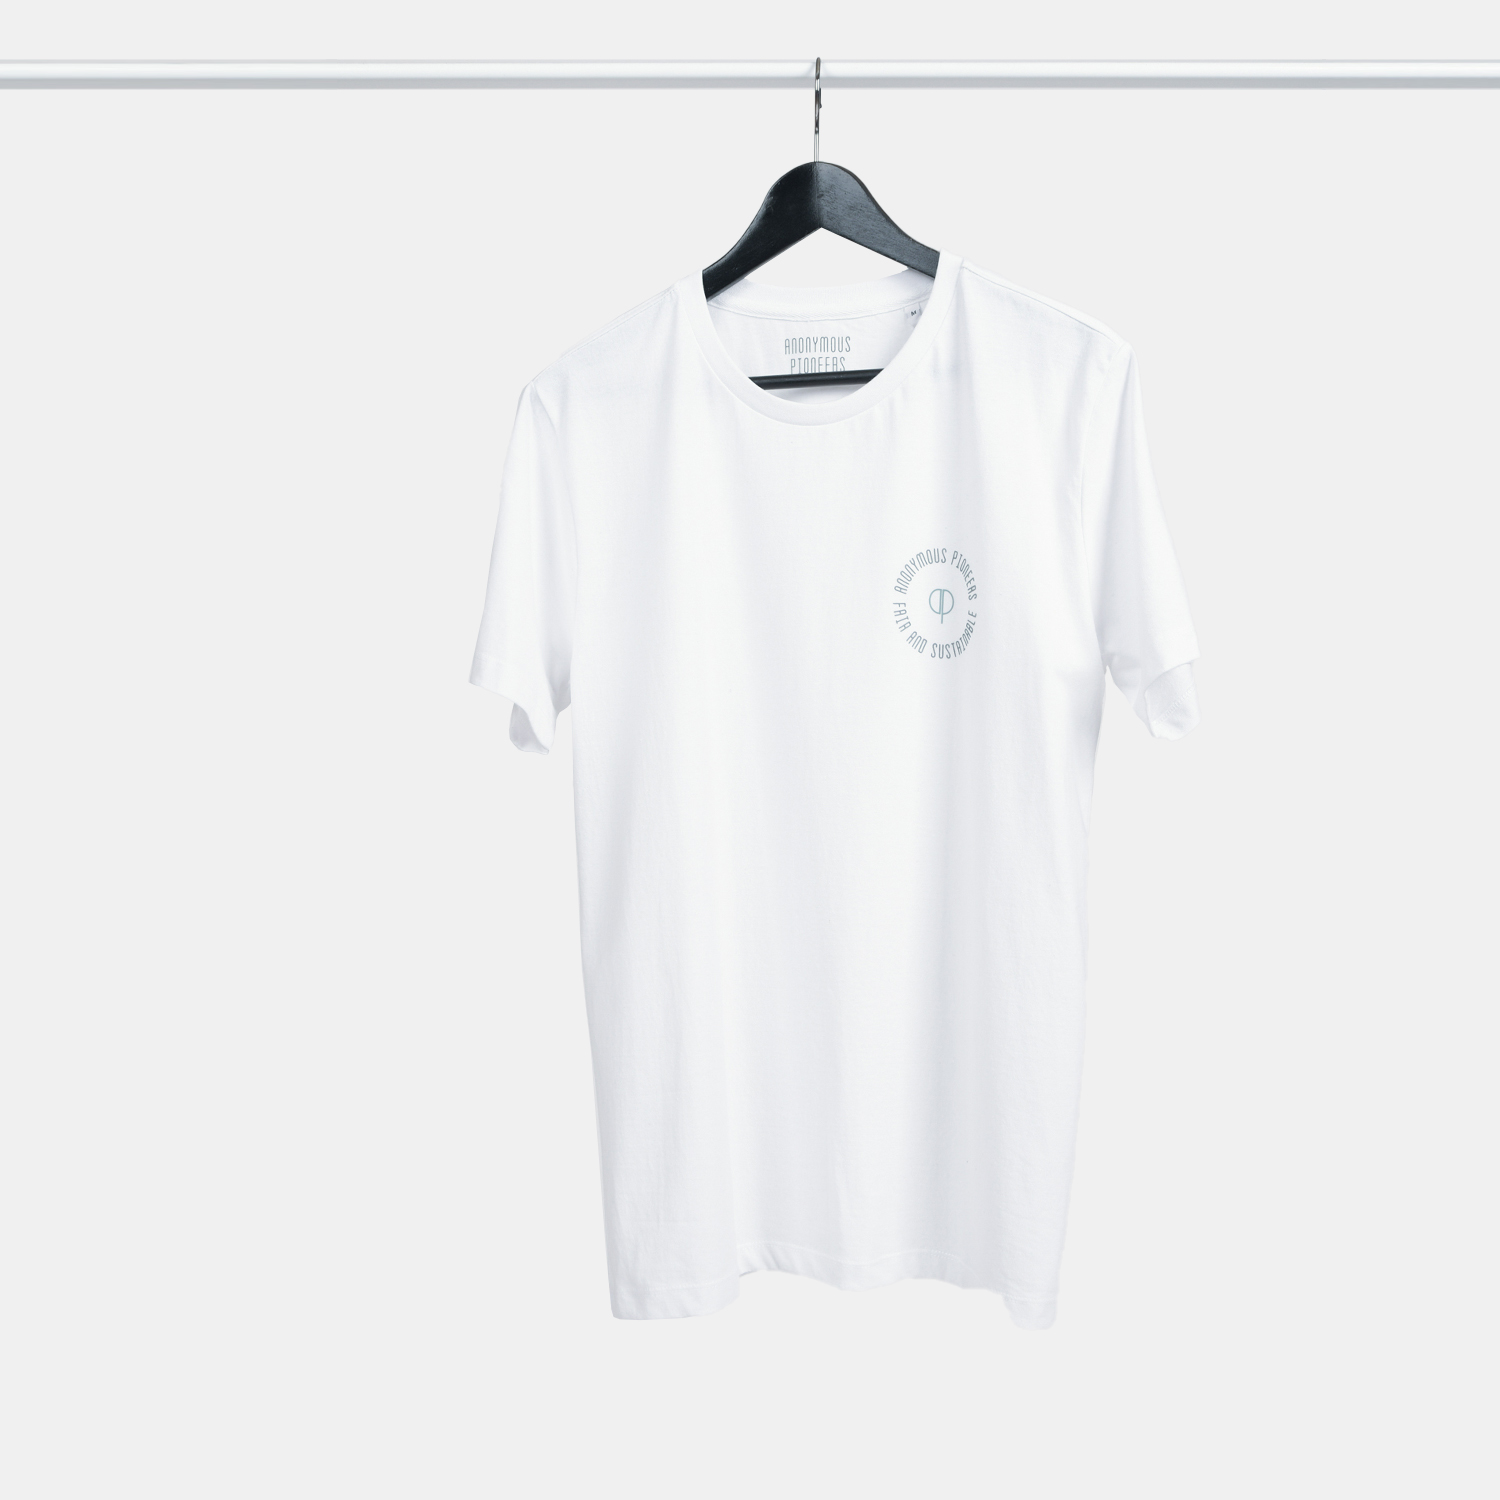 Genanvendt T-shirt i hvid til mænd, lille FAIR print, fra A-PIONEER